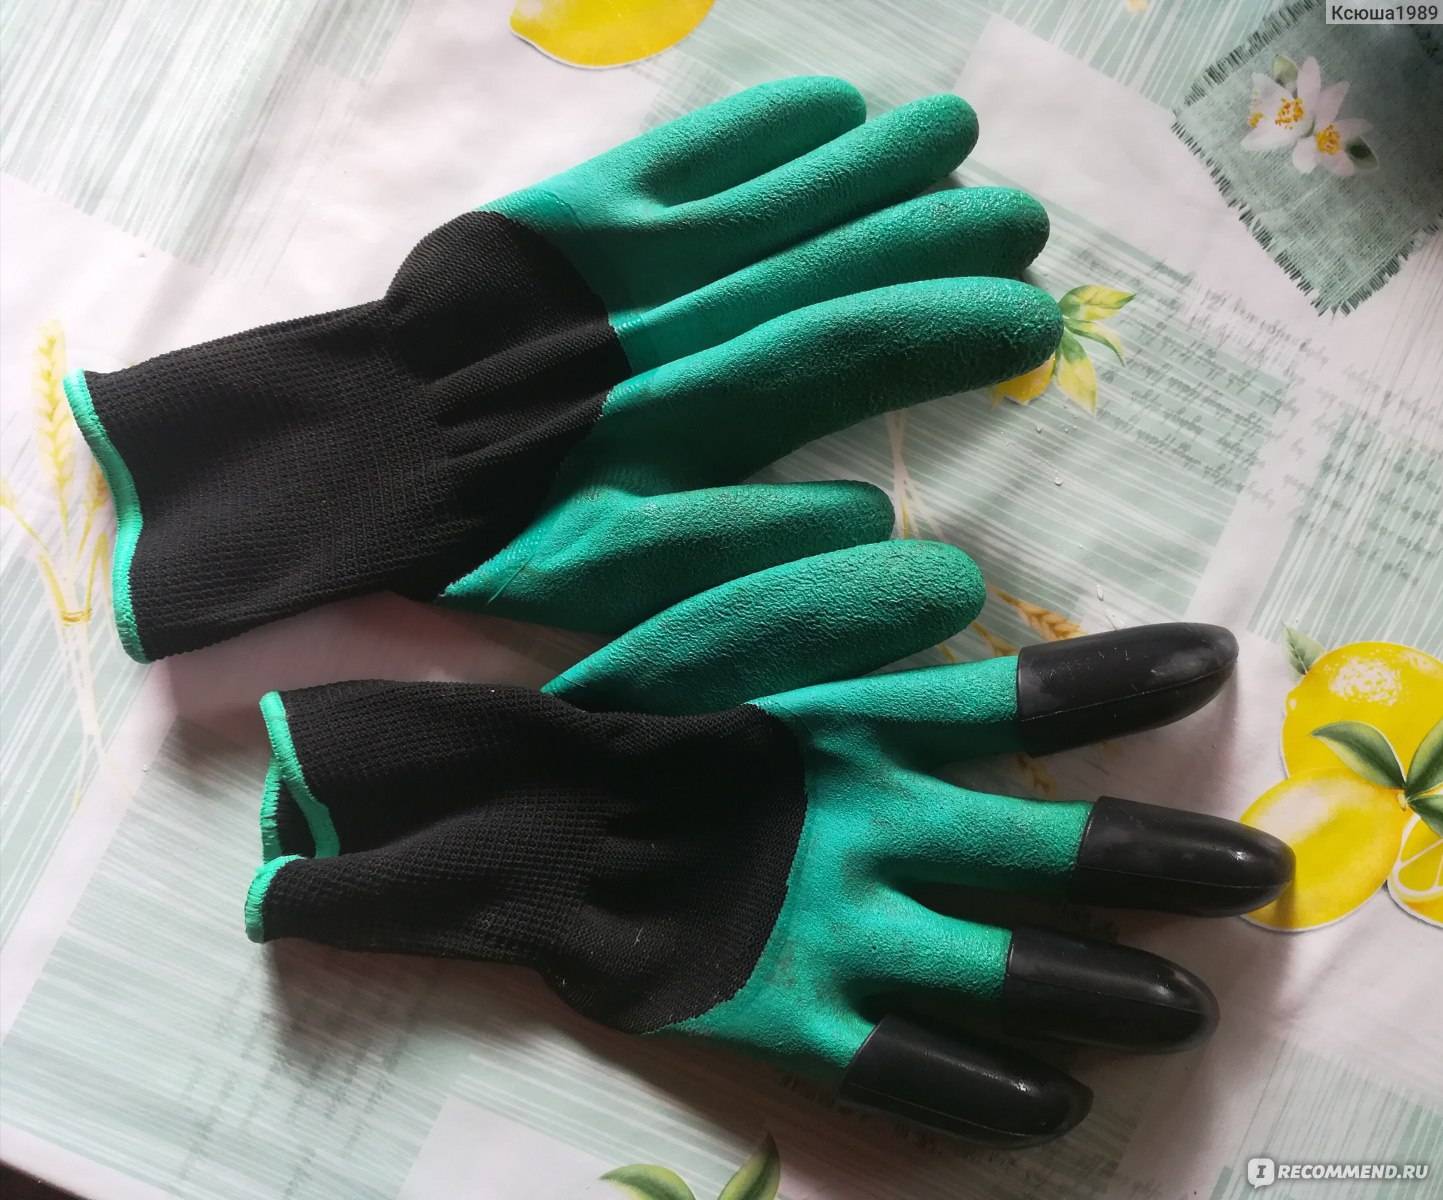 Тестируем перчатки с когтями: удобно ли ими работать на самом деле?